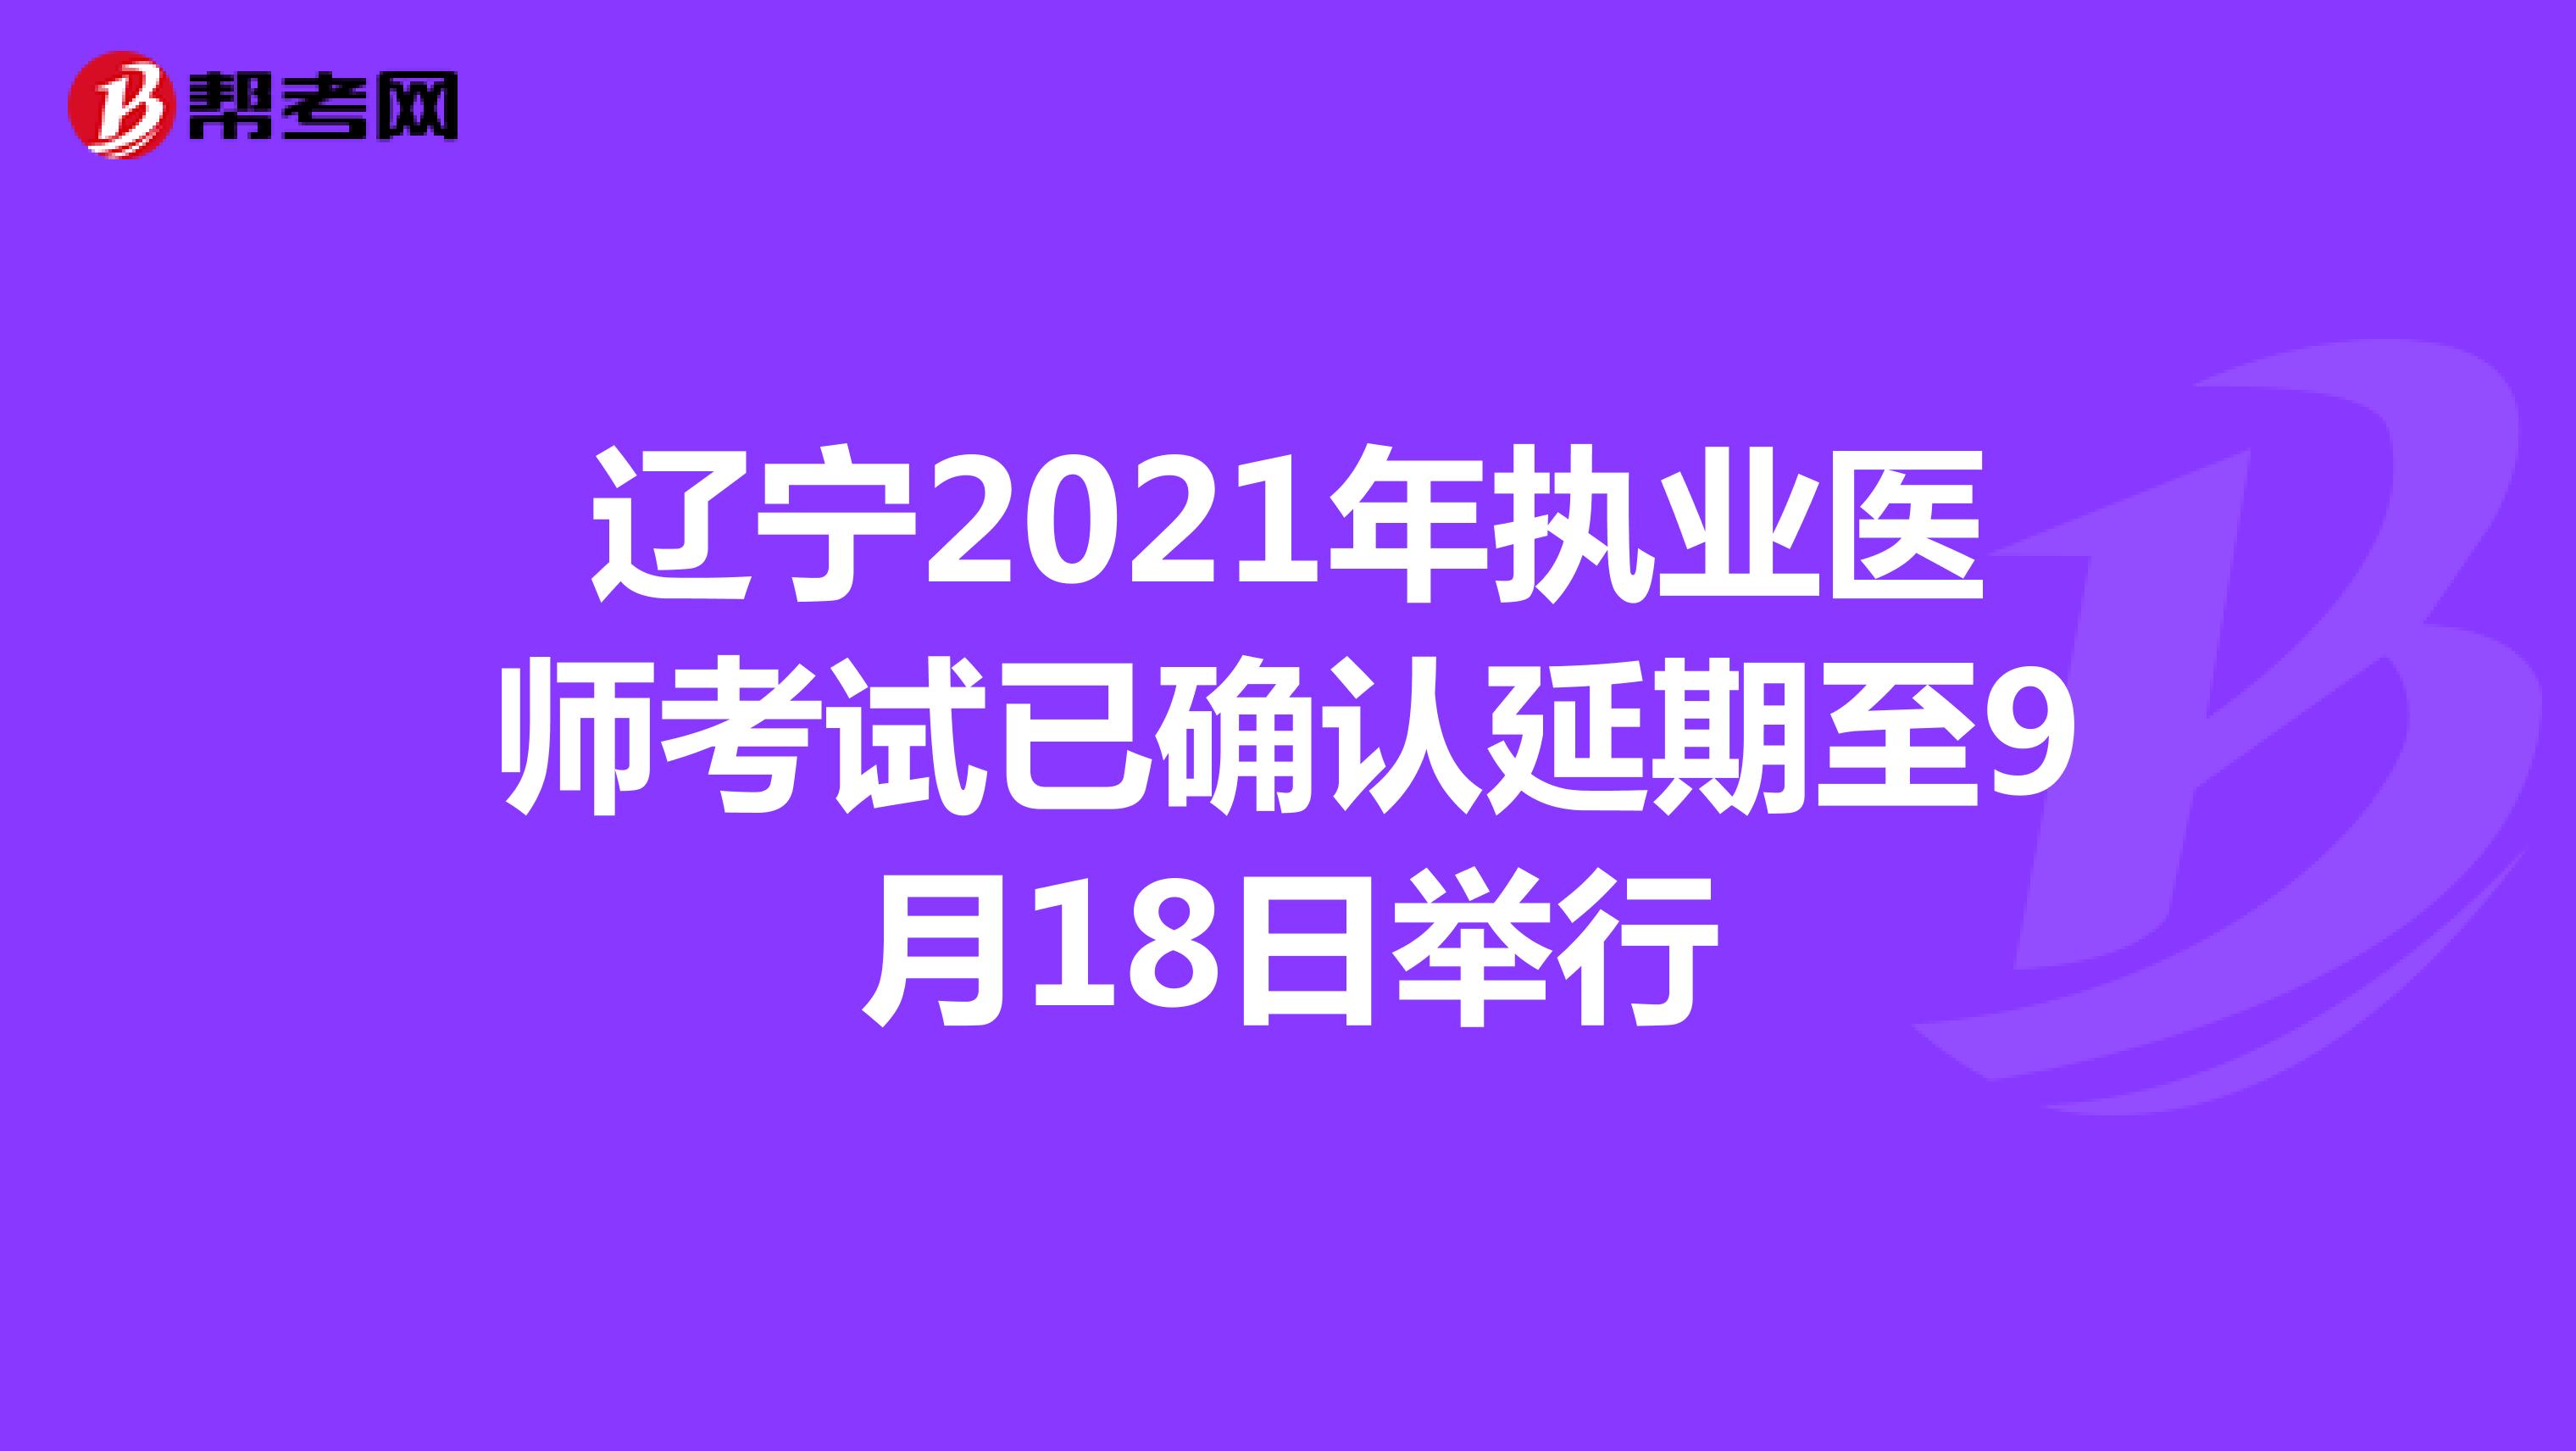 辽宁2021年执业医师考试已确认延期至9月18日举行